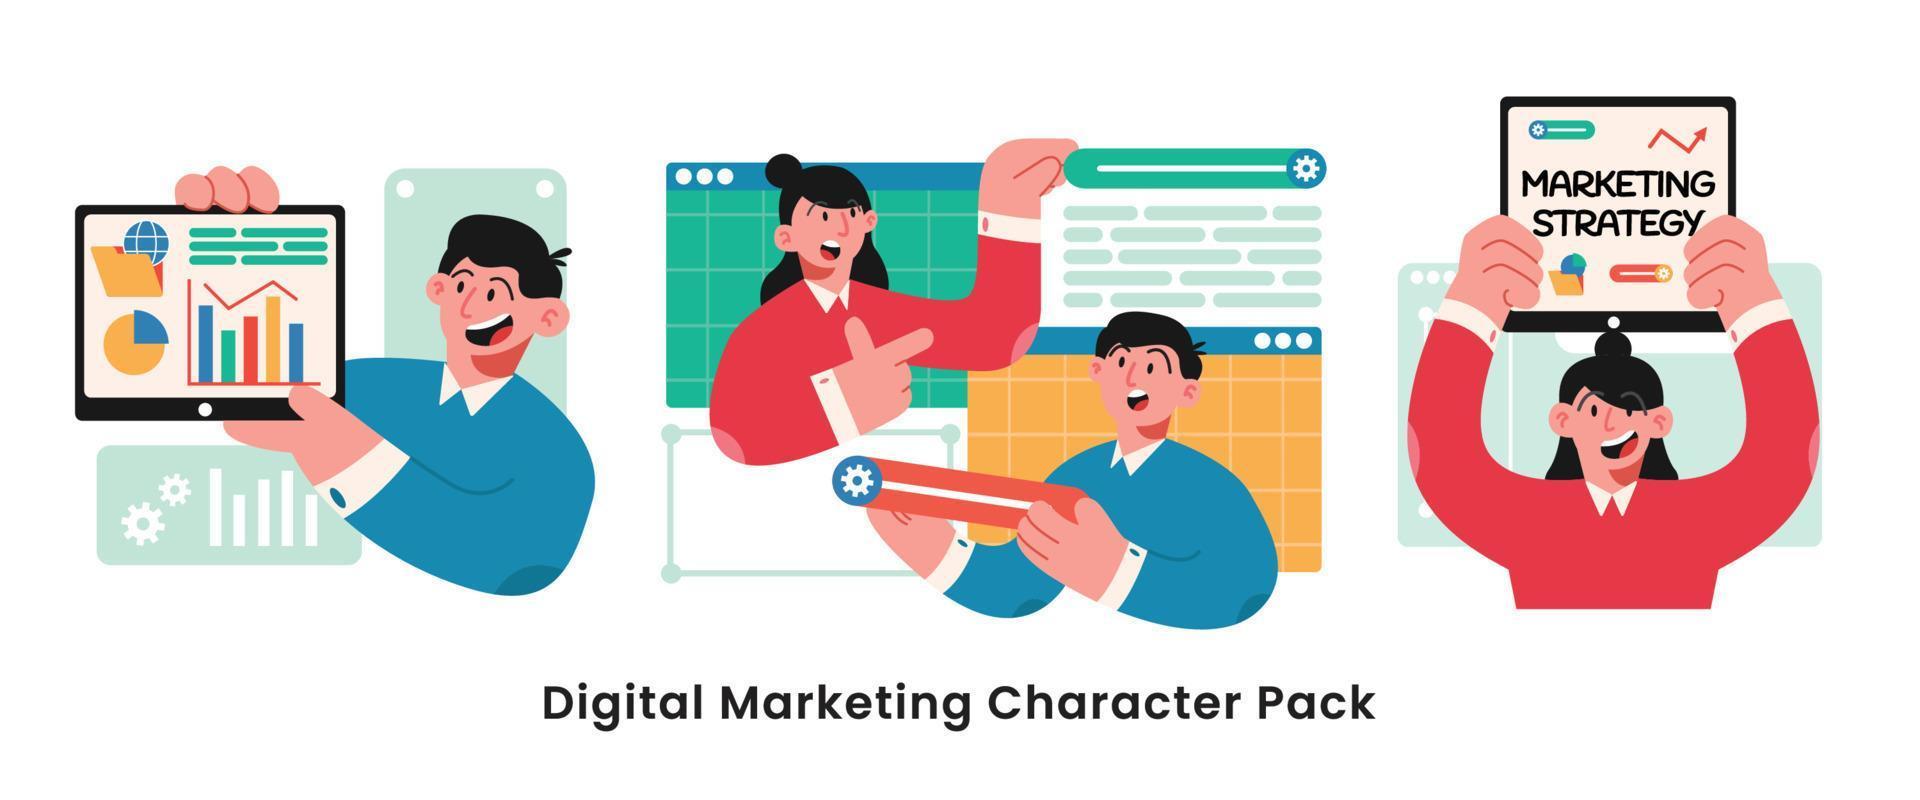 illustrazione del carattere del marketing digitale. pack collection di uomini e donne che partecipano al marketing digitale vettore